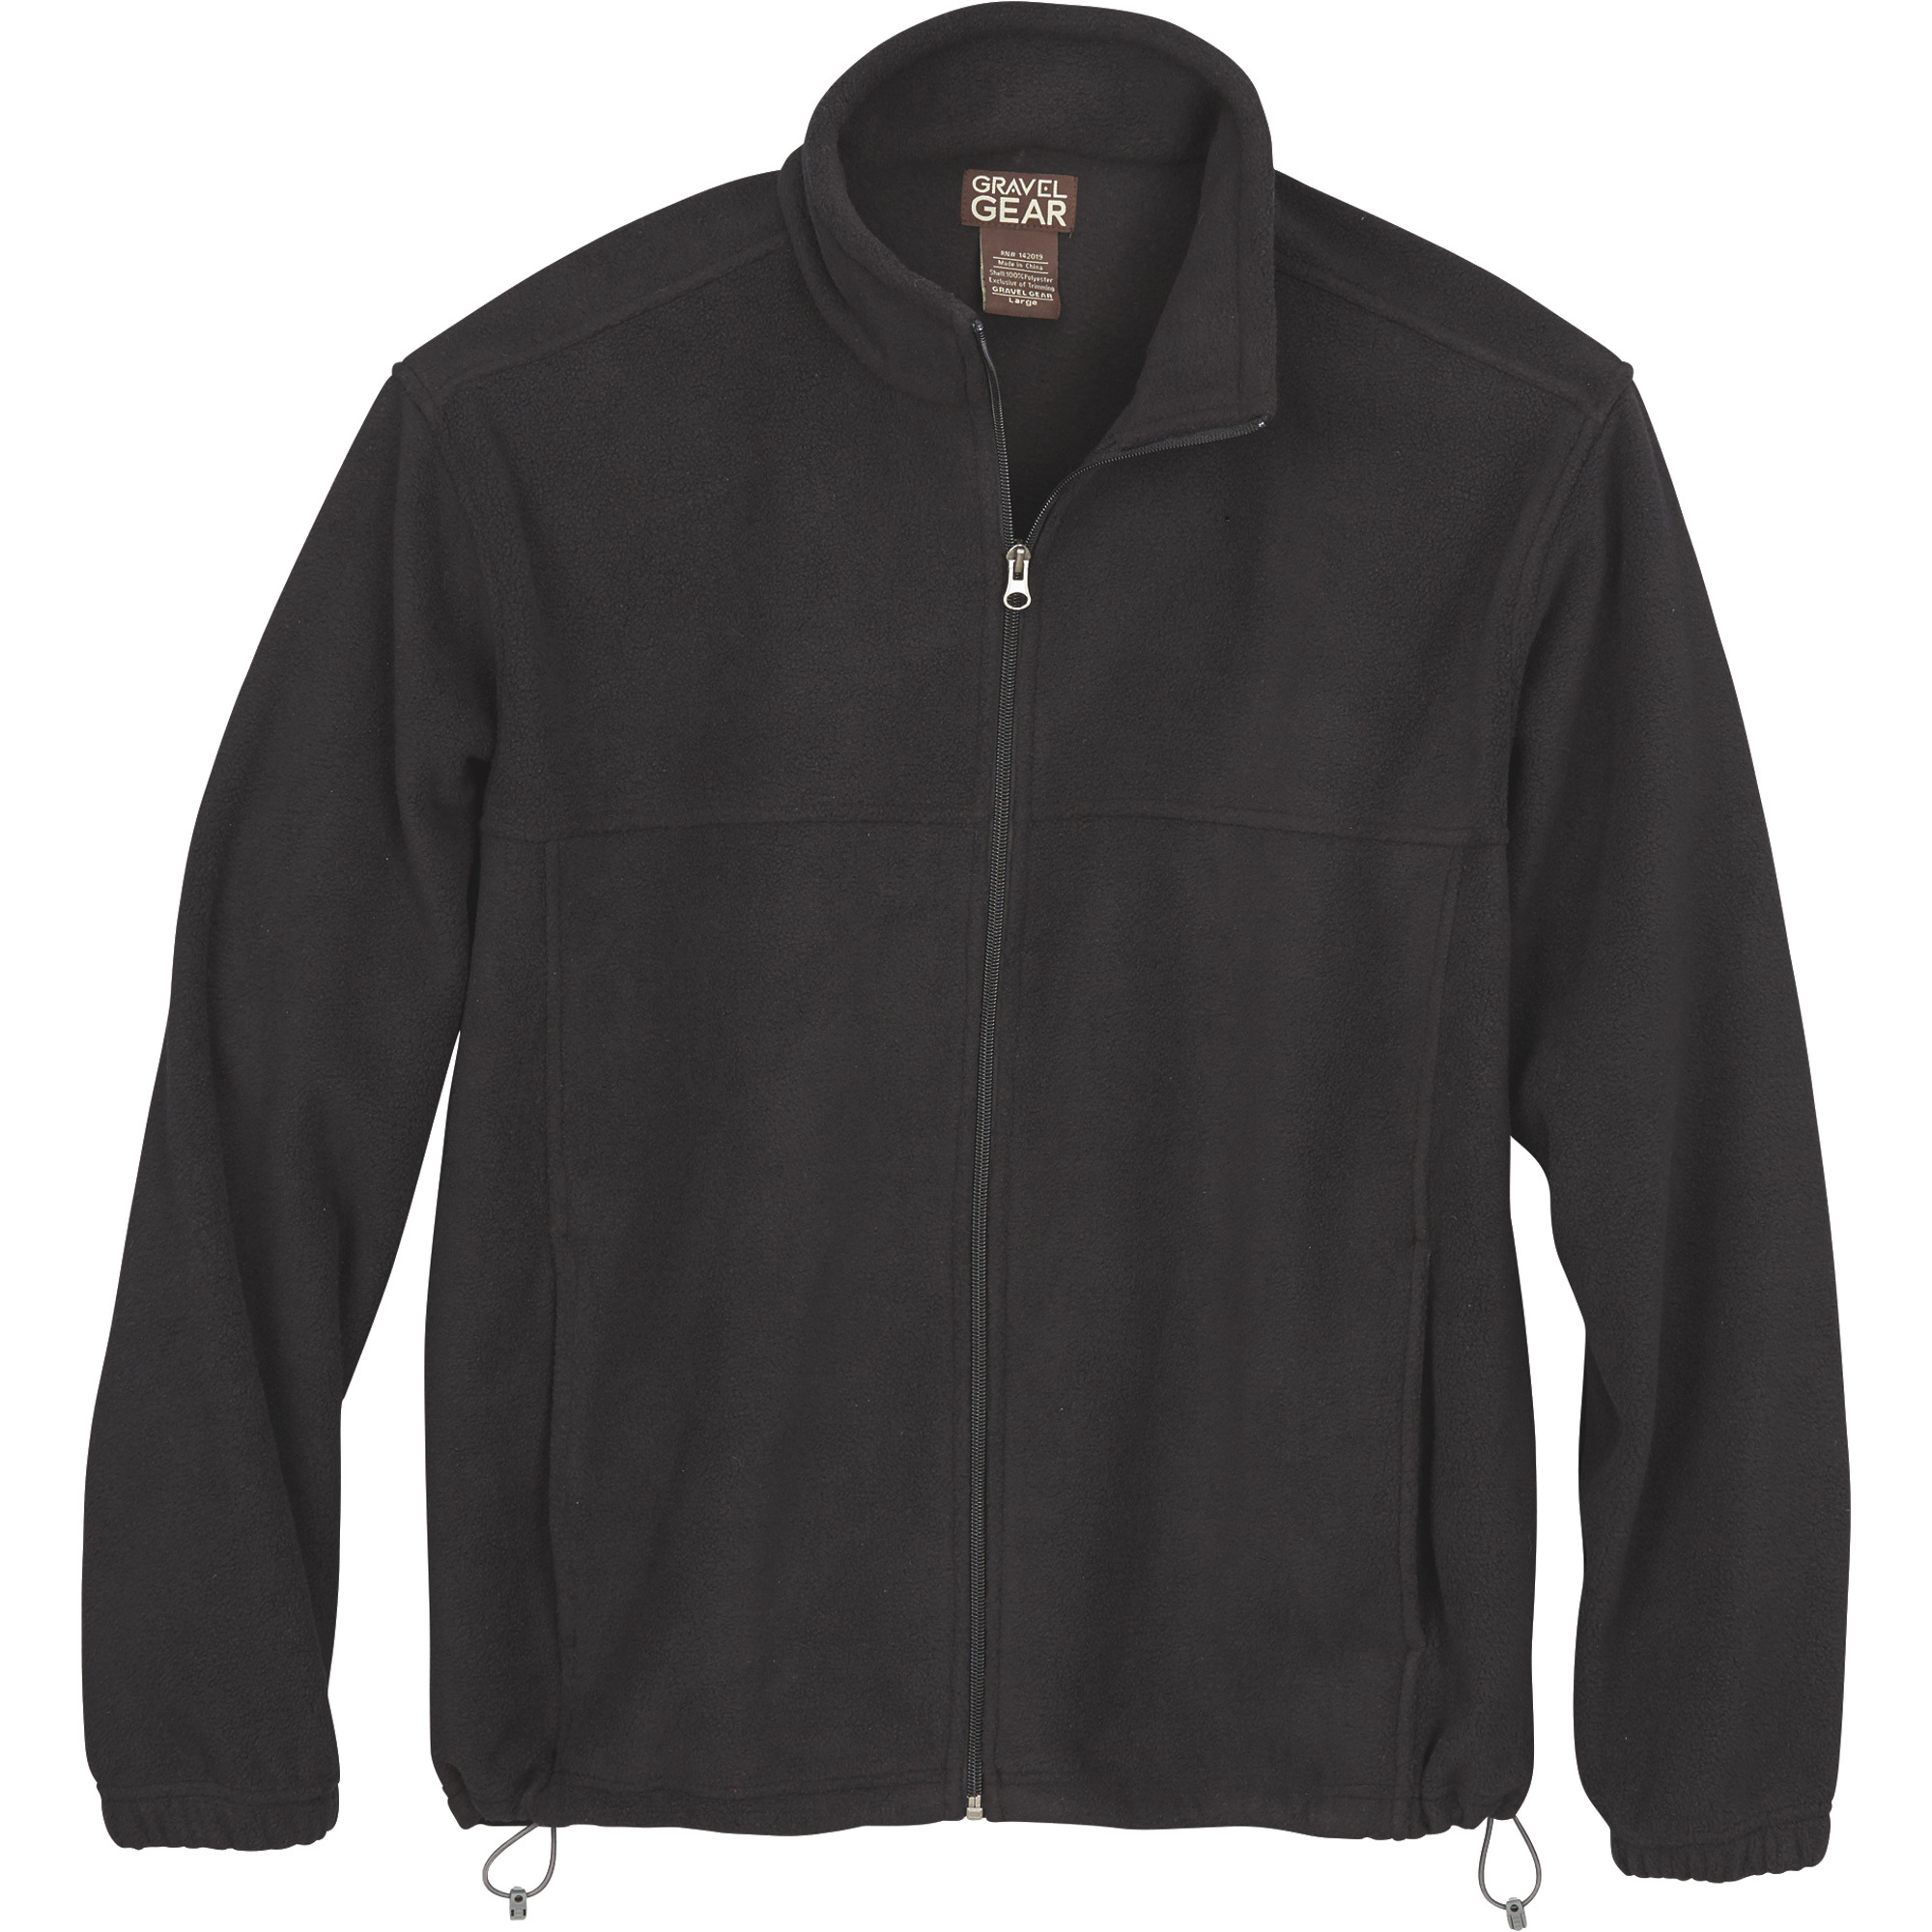 Gravel Gear Men's Zip-Up Fleece Jacket â Black, XL